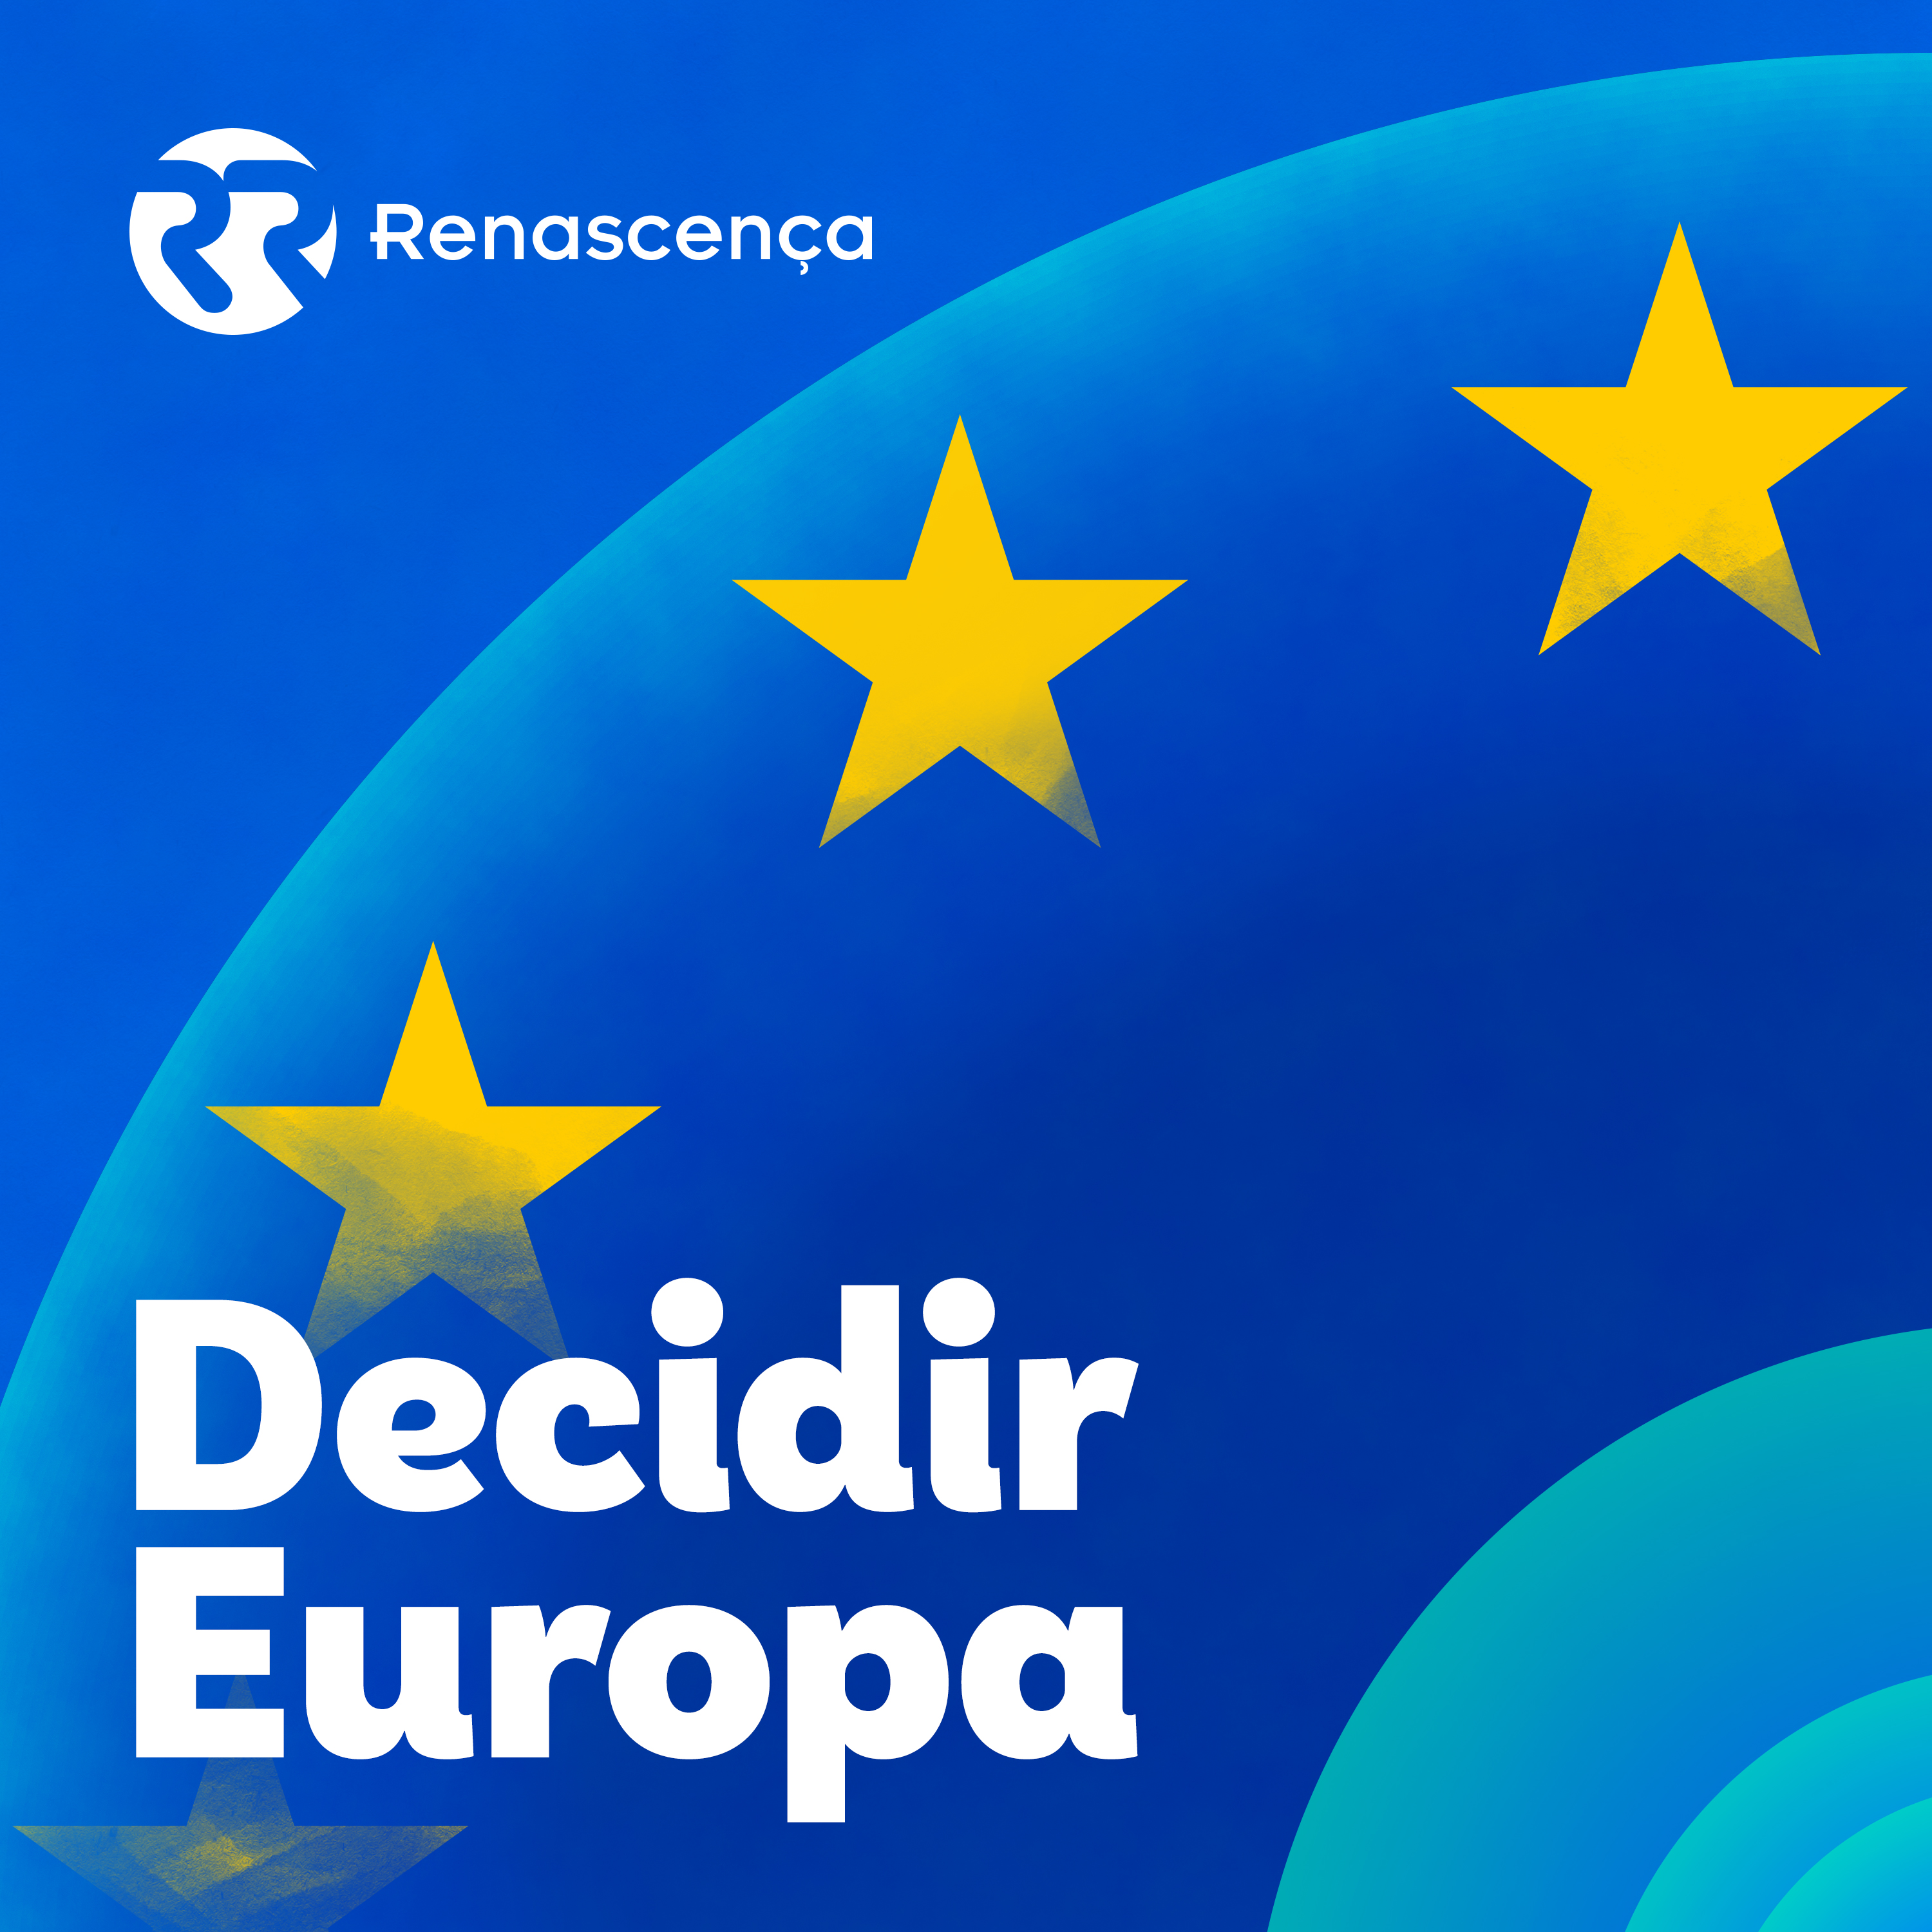 Decidir Europa - Rodrigo Moita de Deus e o futuro do comércio - 01/05/2021